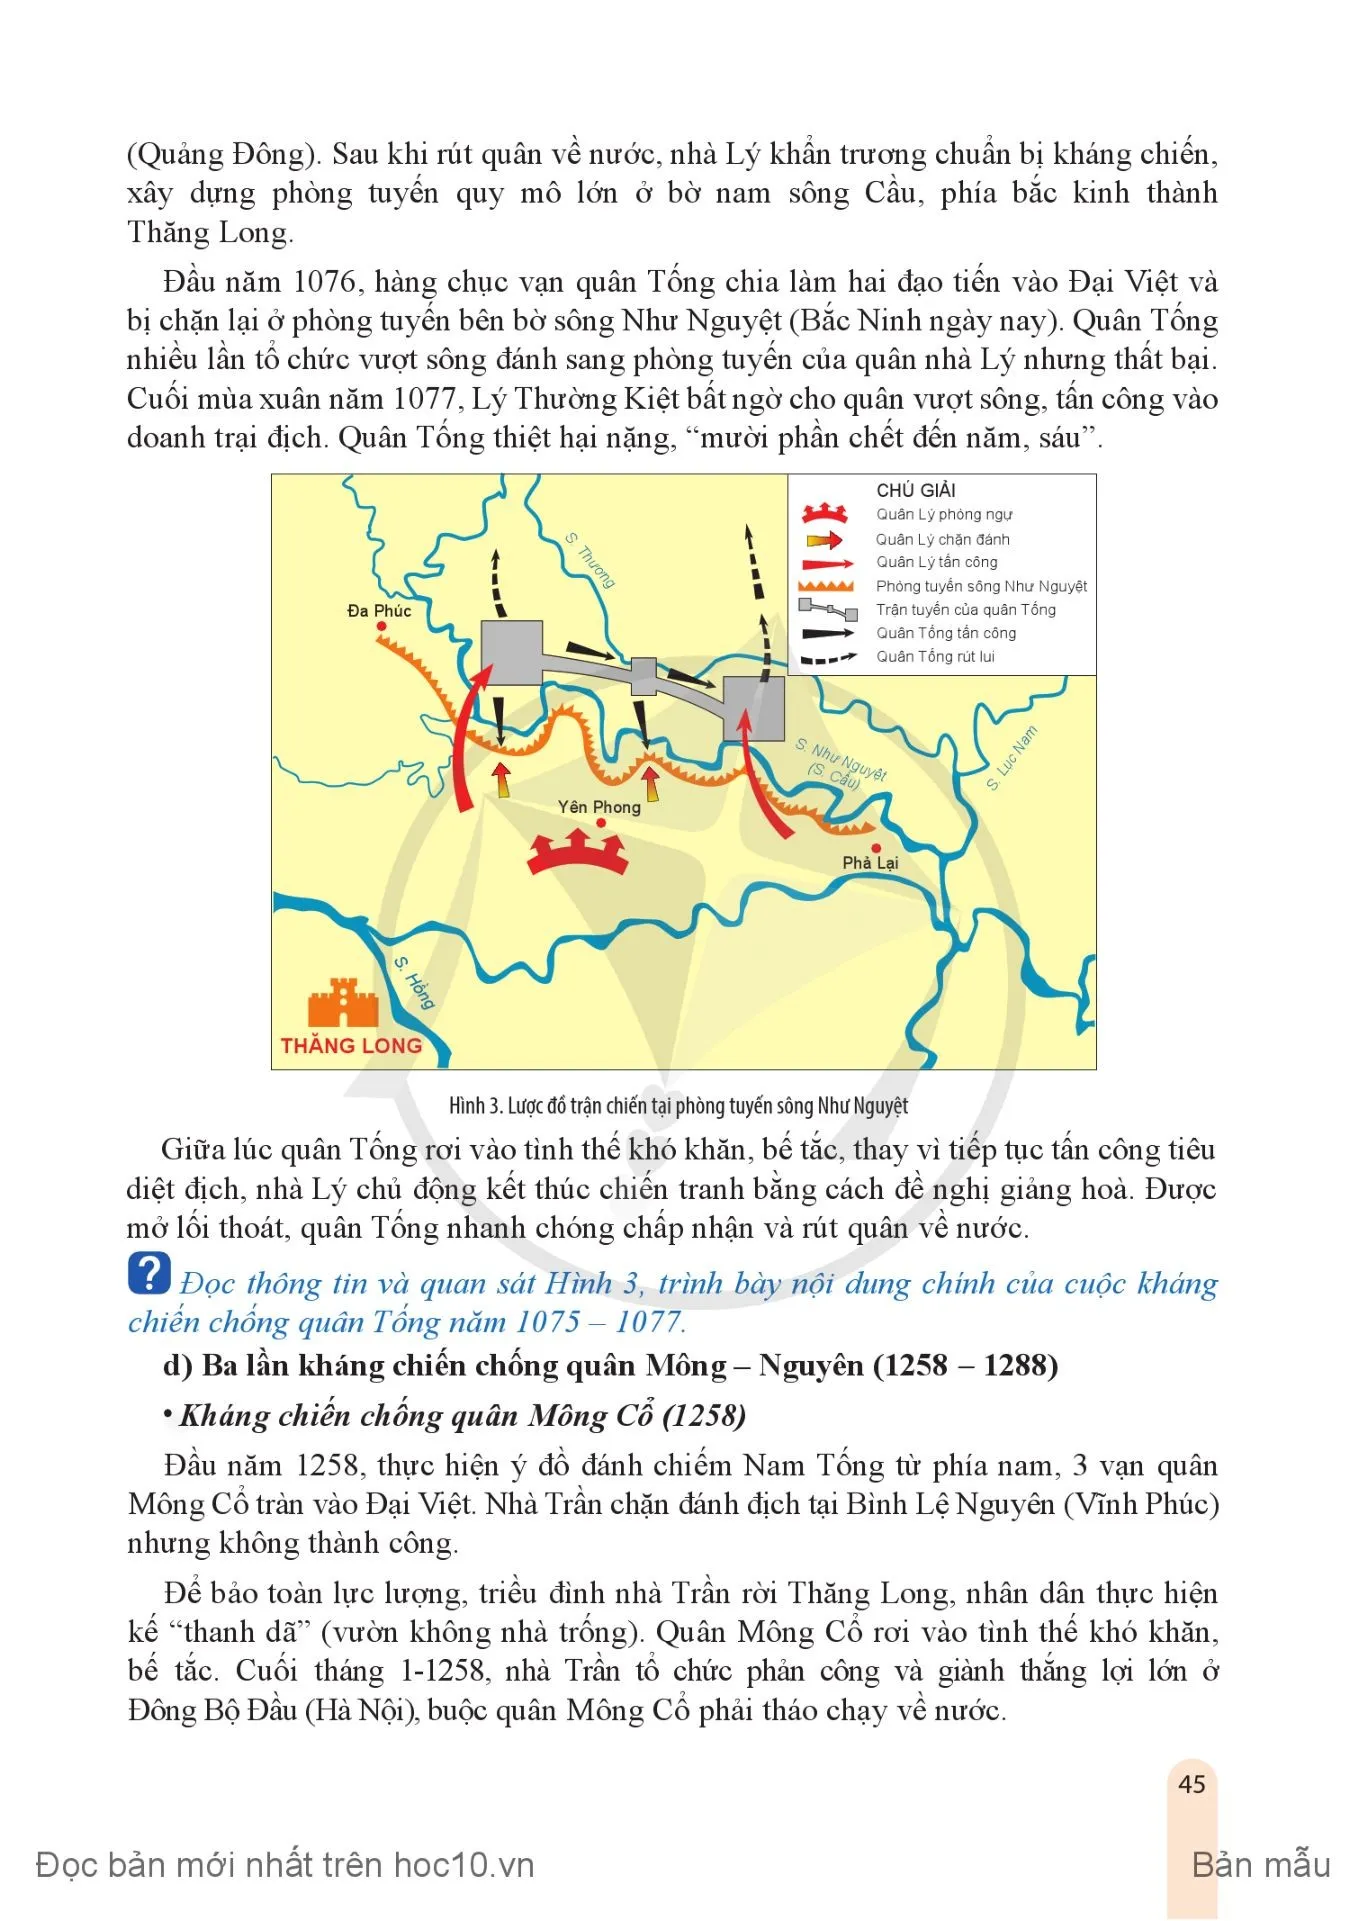 Bài 7. Khái quát về chiến tranh bảo vệ Tổ quốc trong lịch sử Việt Nam